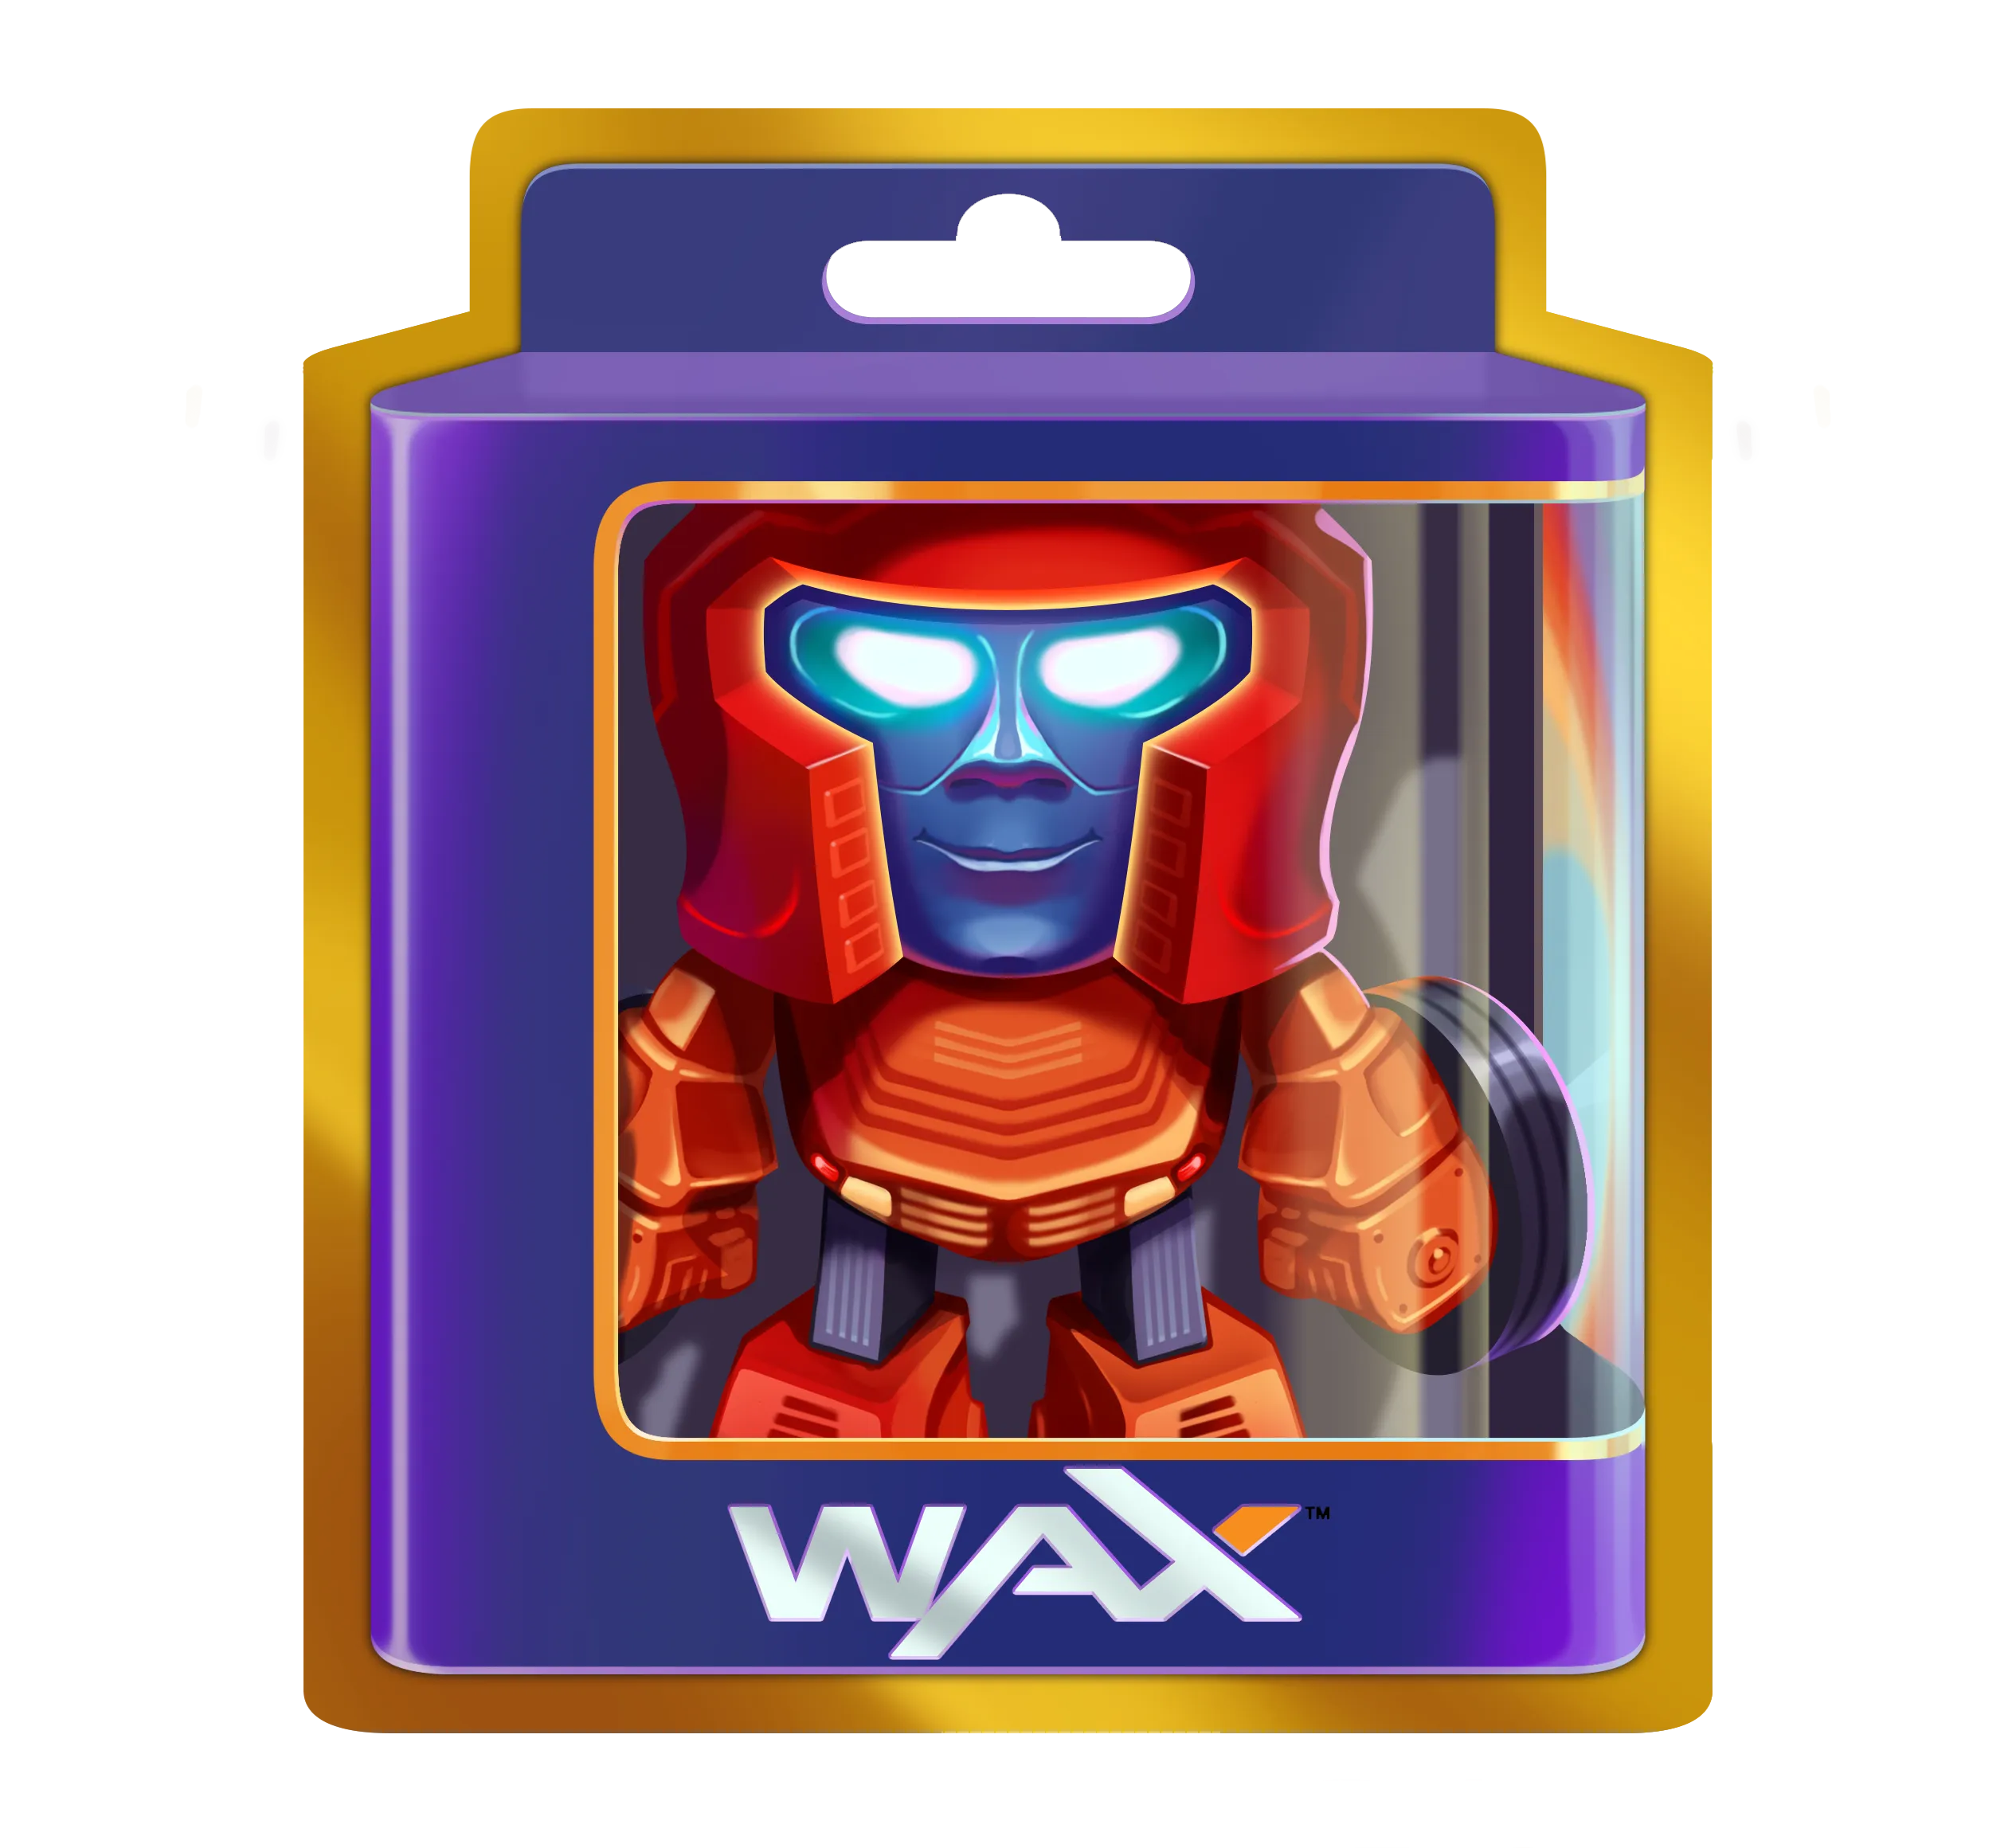 WAX digital toy in a box.